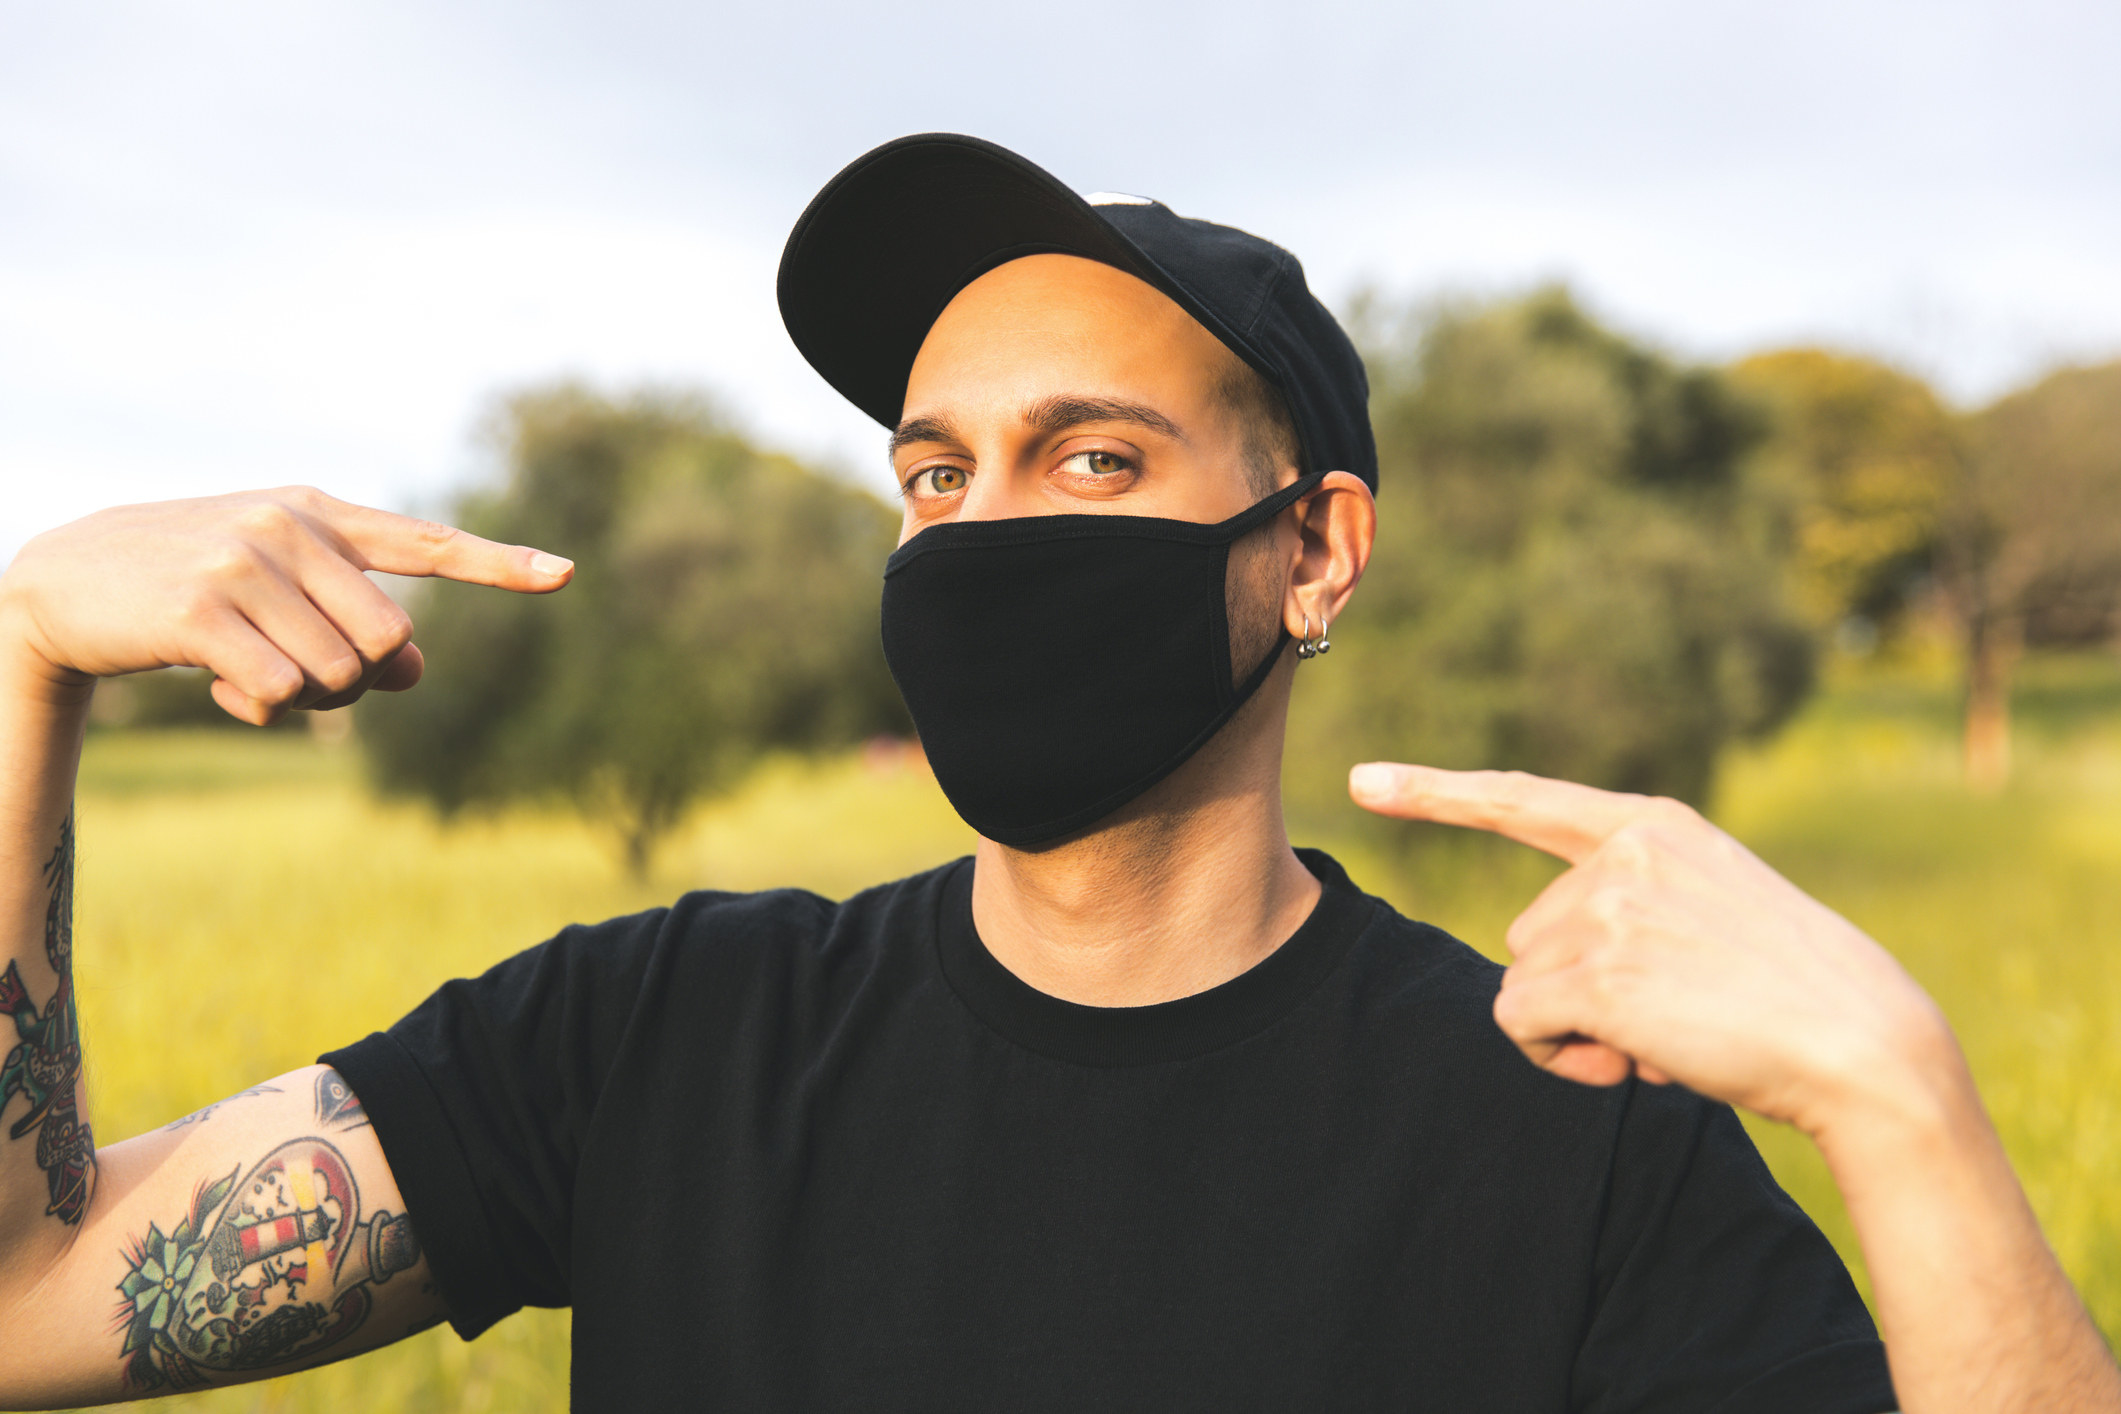 Une personne pointant son masque tout en portant une tenue d’une seule couleur.